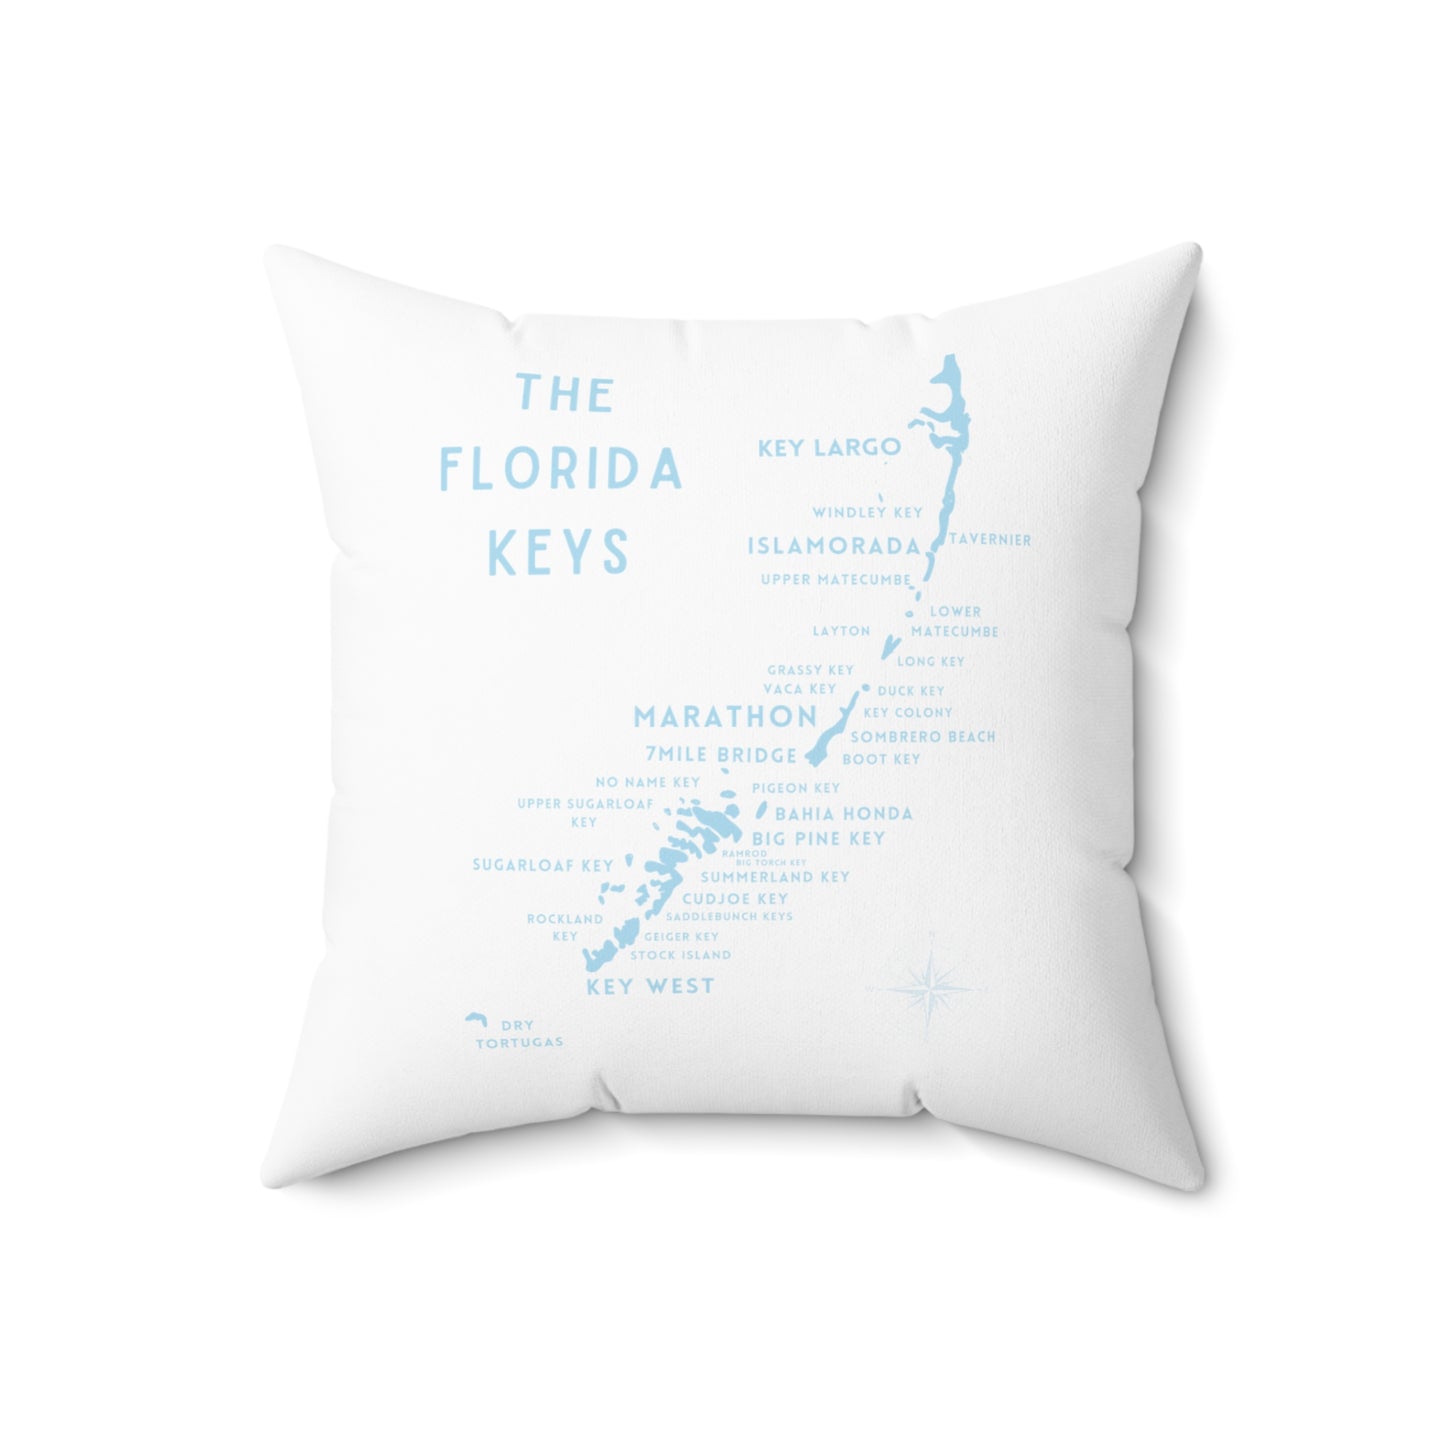 Florida Keys Map - throw pillow - white with blue - four sizes